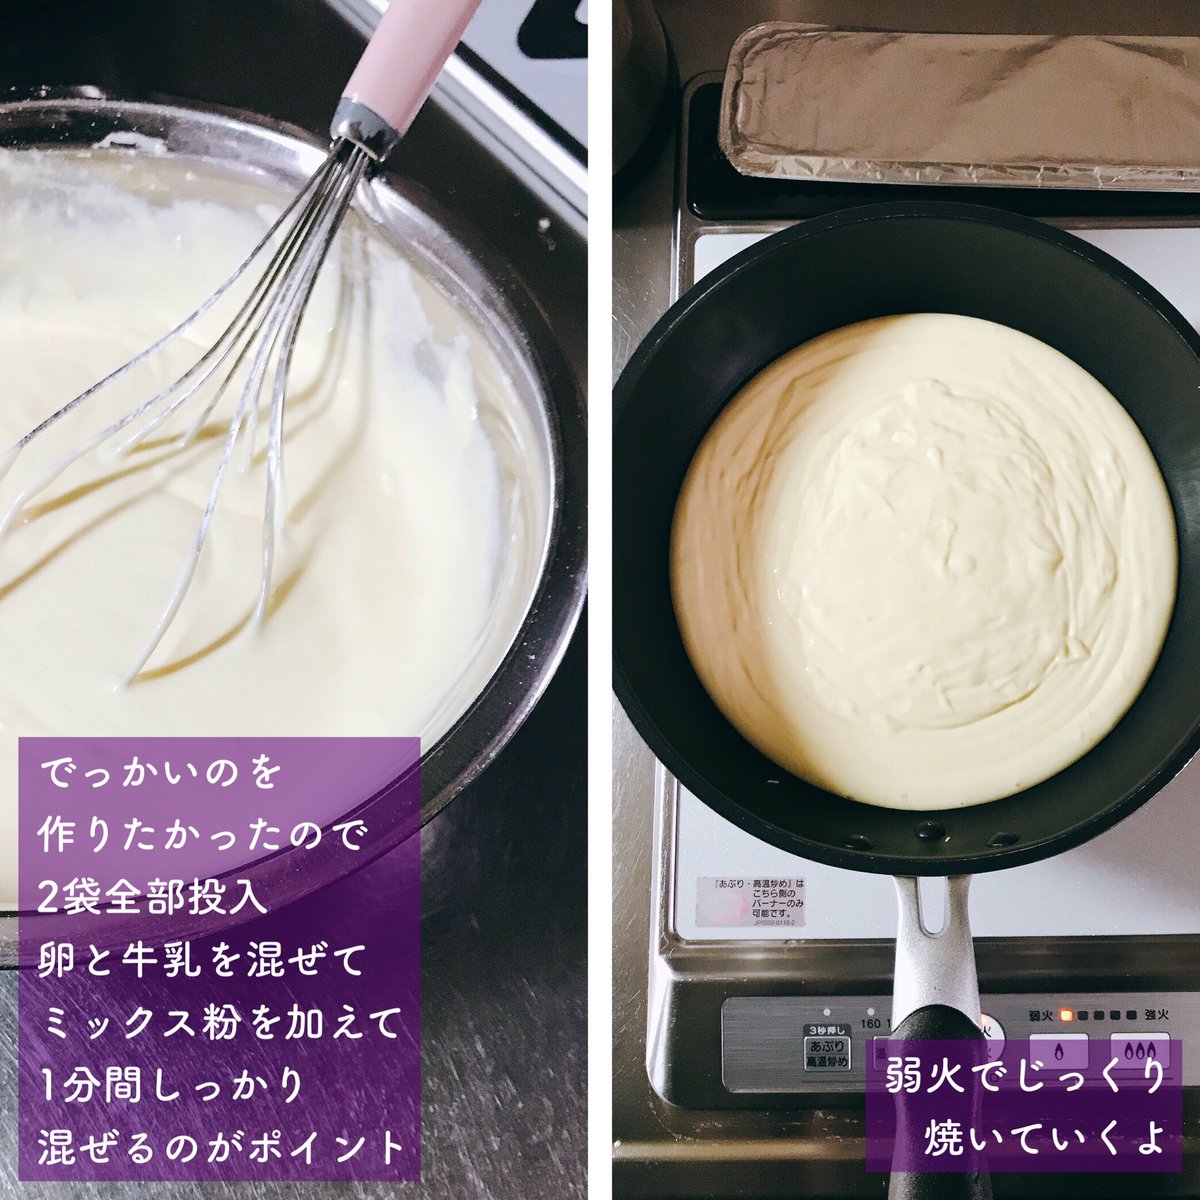 昭和産業 SHOWA まんまるおおきなホットケーキのもと 100g×2袋 ×6